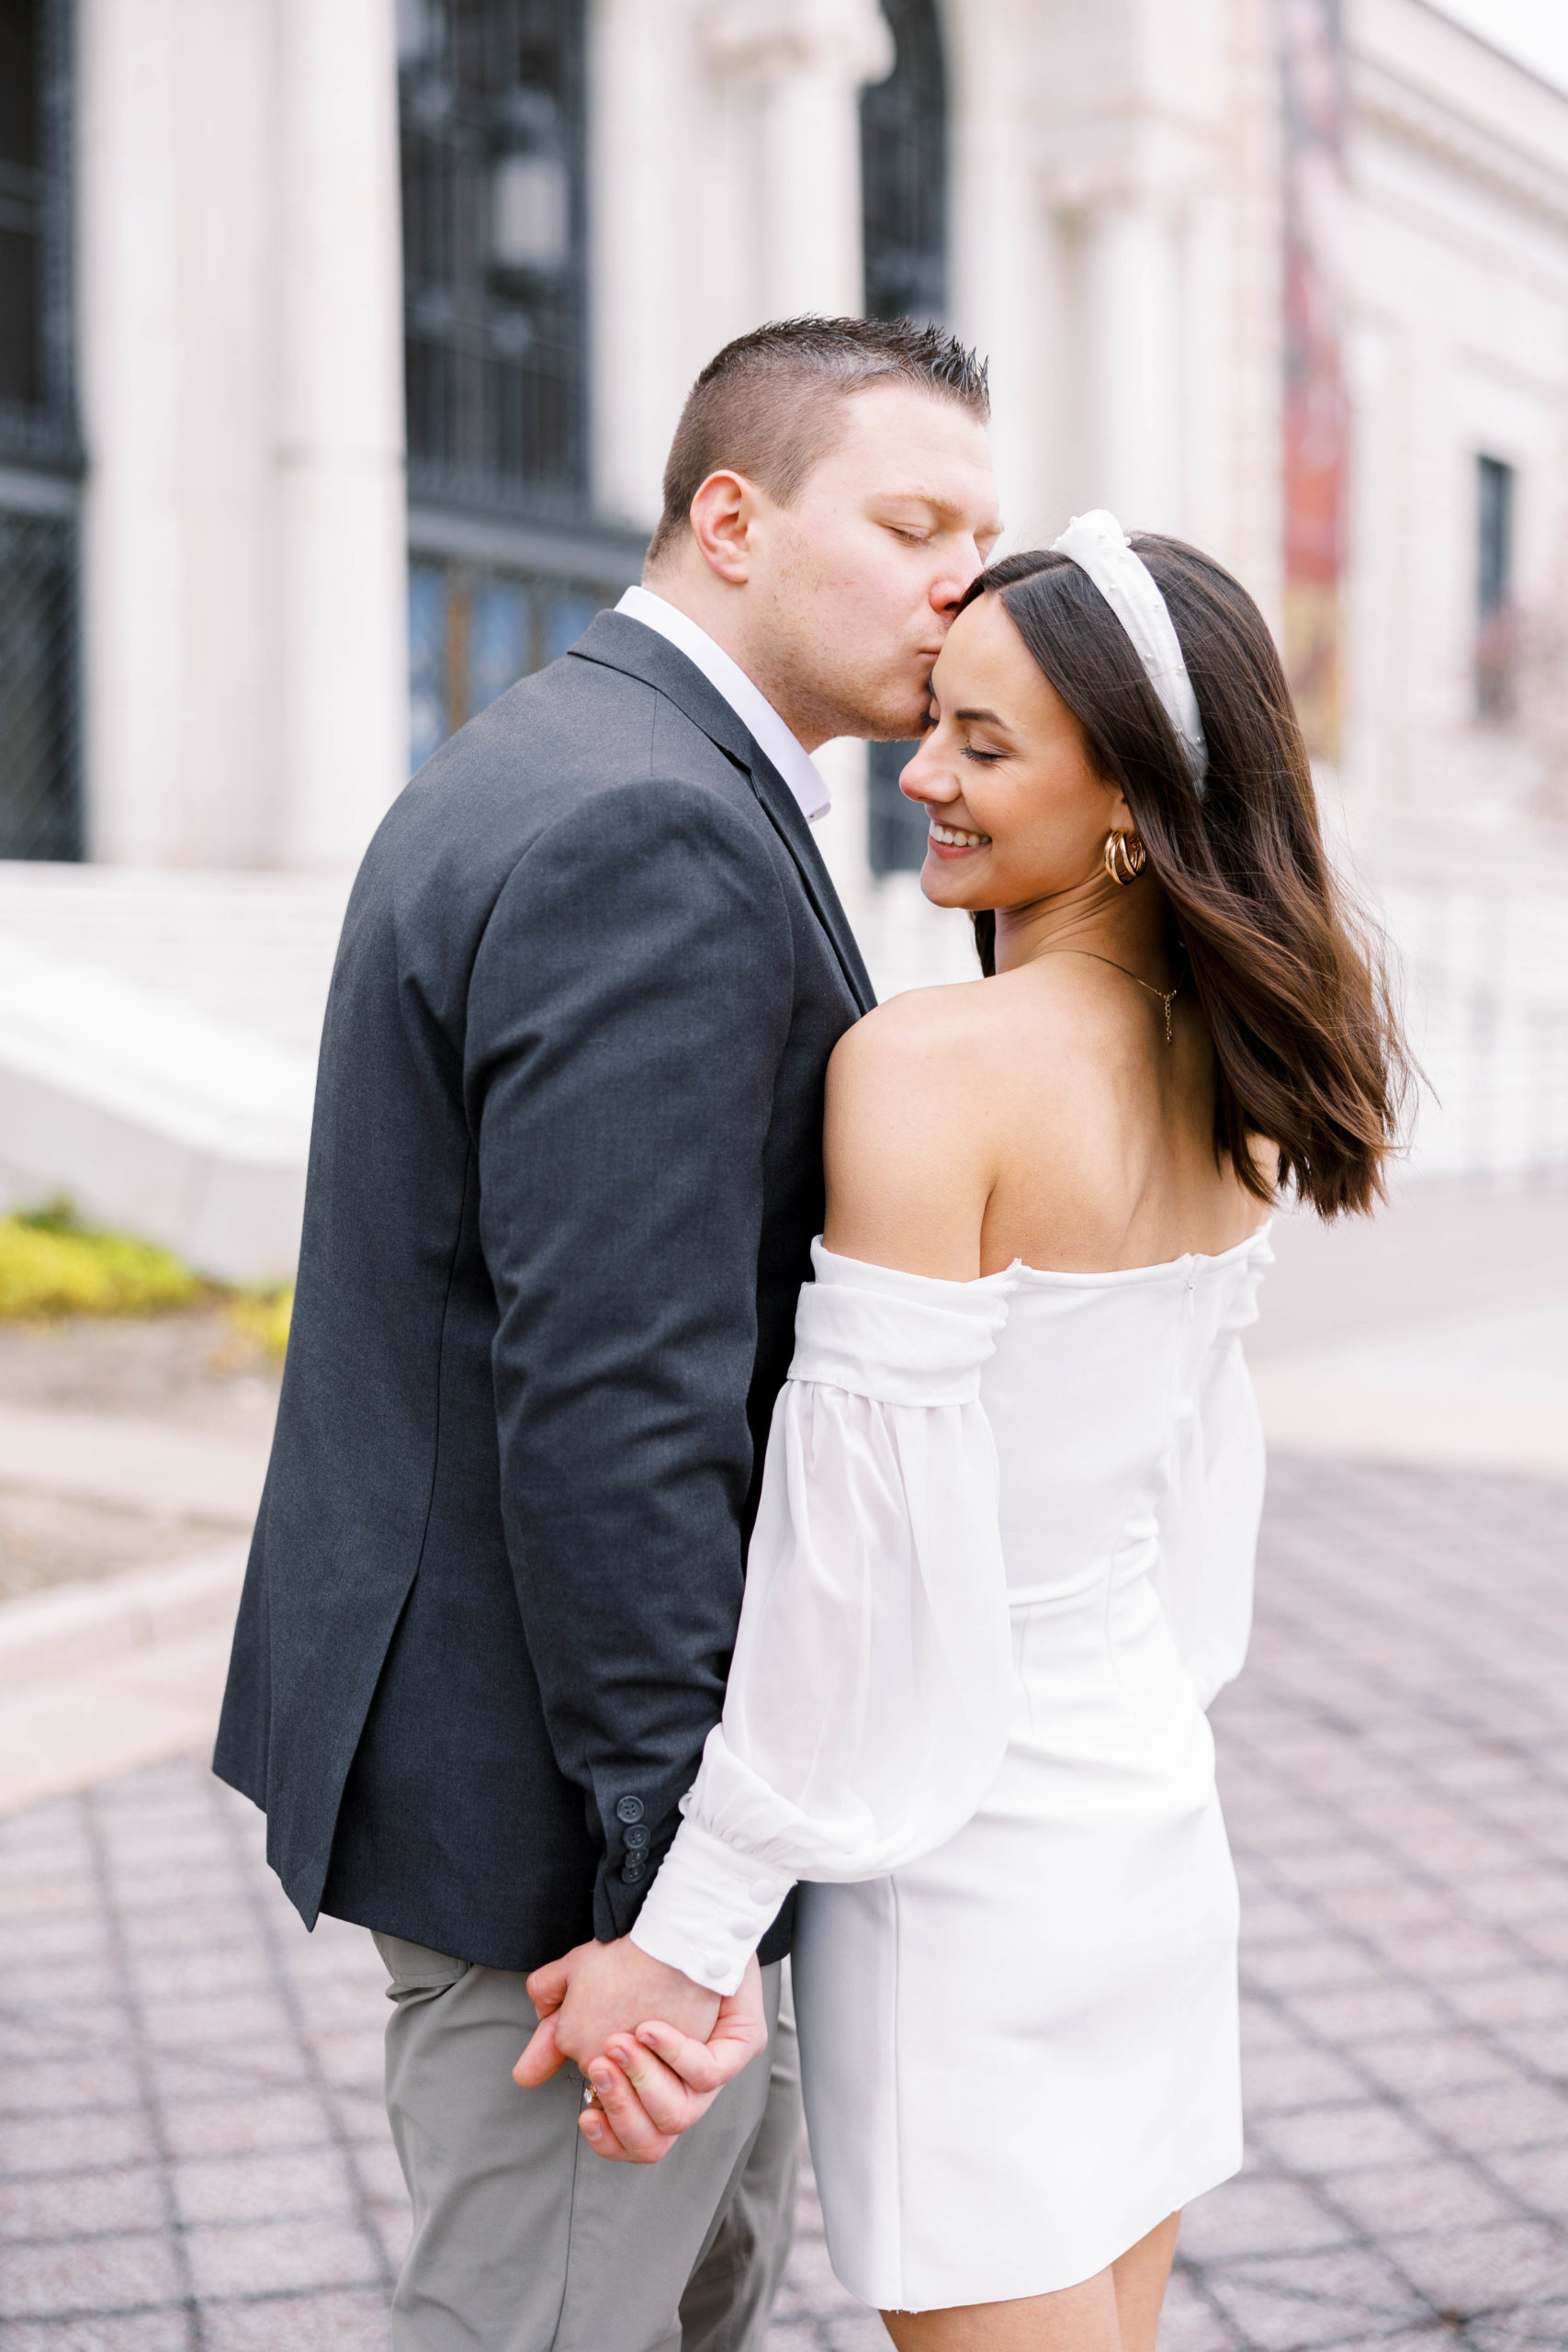 man kisses woman in a white dress